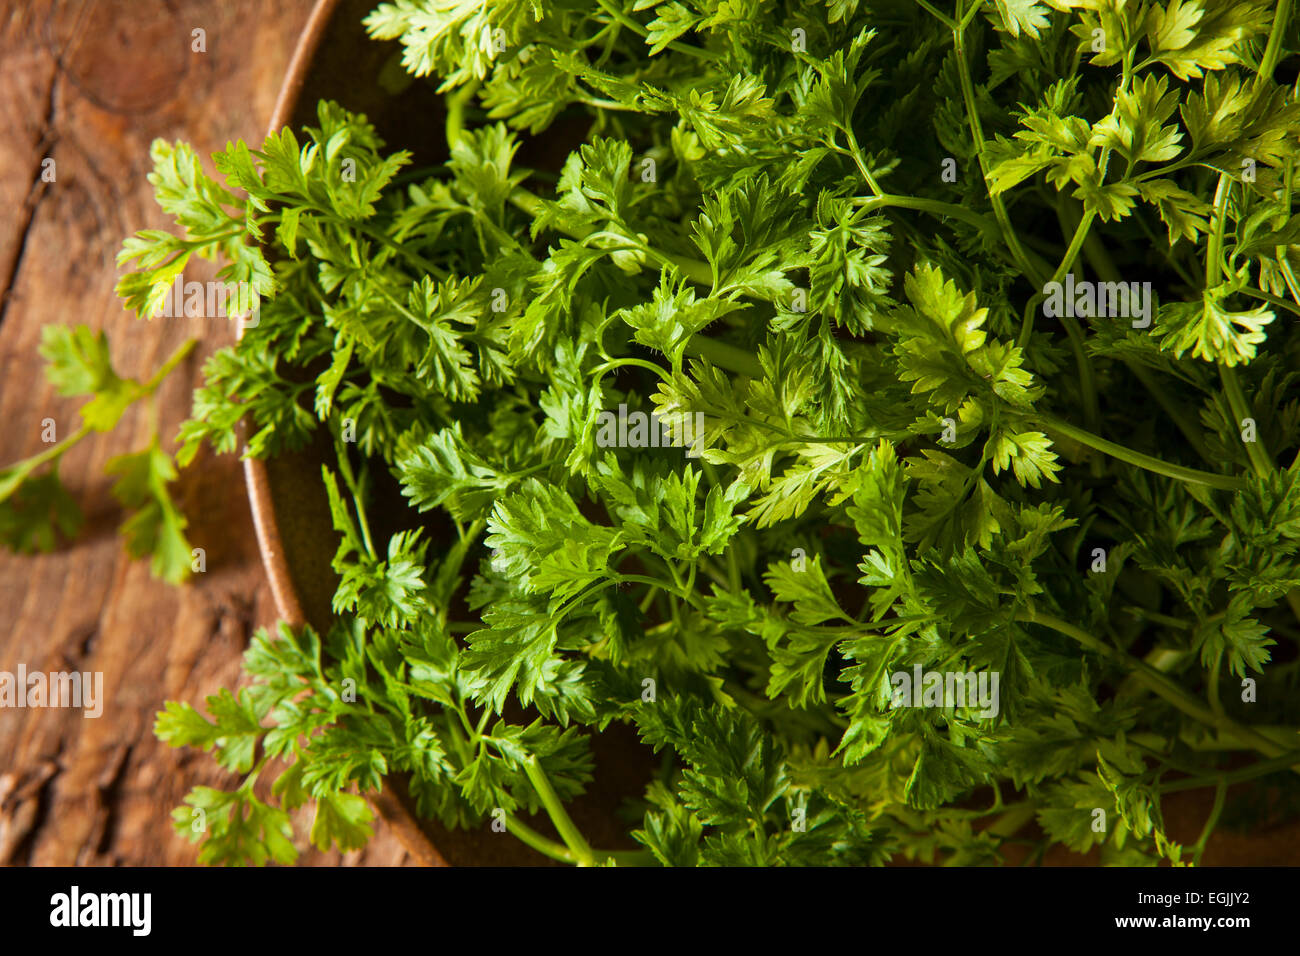 Materie organiche prezzemolo francese cerfoglio su uno sfondo Foto Stock